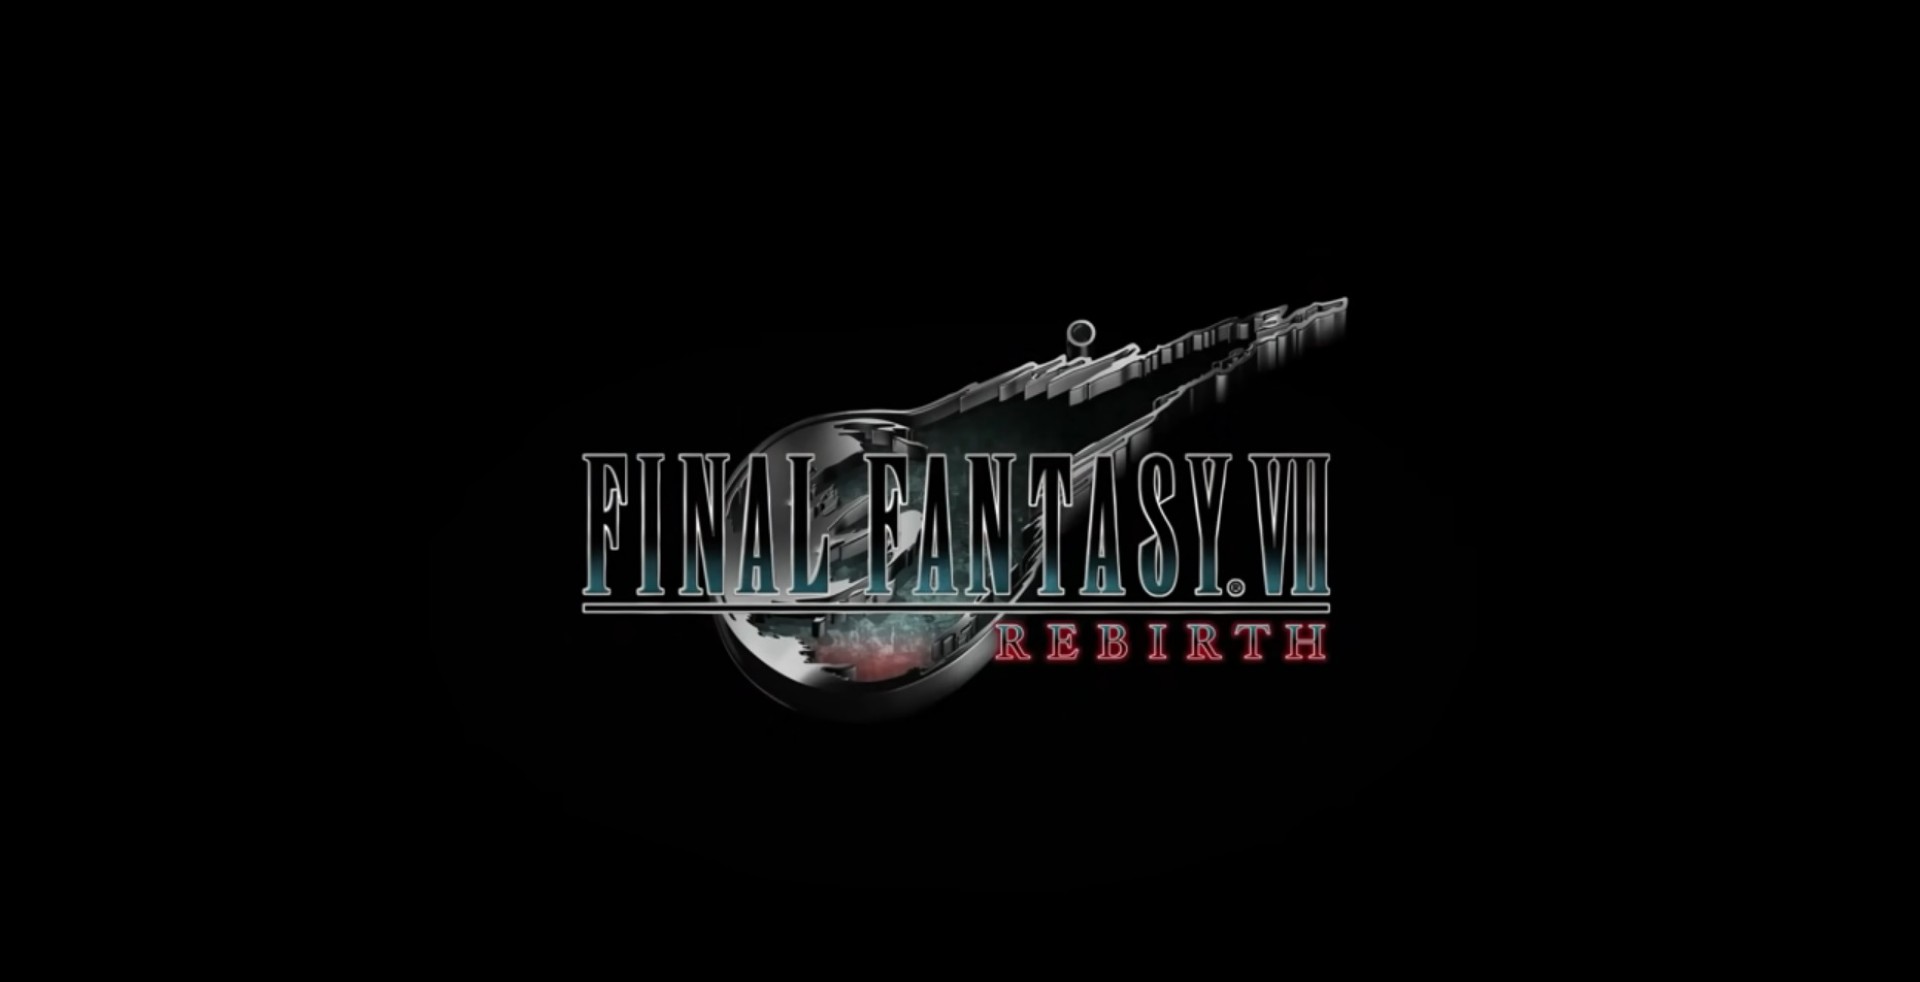 โปรดิวเซอร์ยอมรับ Final Fantasy 7 Remake จำเป็นต้องเปลี่ยนเนื้อเรื่อง เพื่อให้คนเกิดความสนใจ